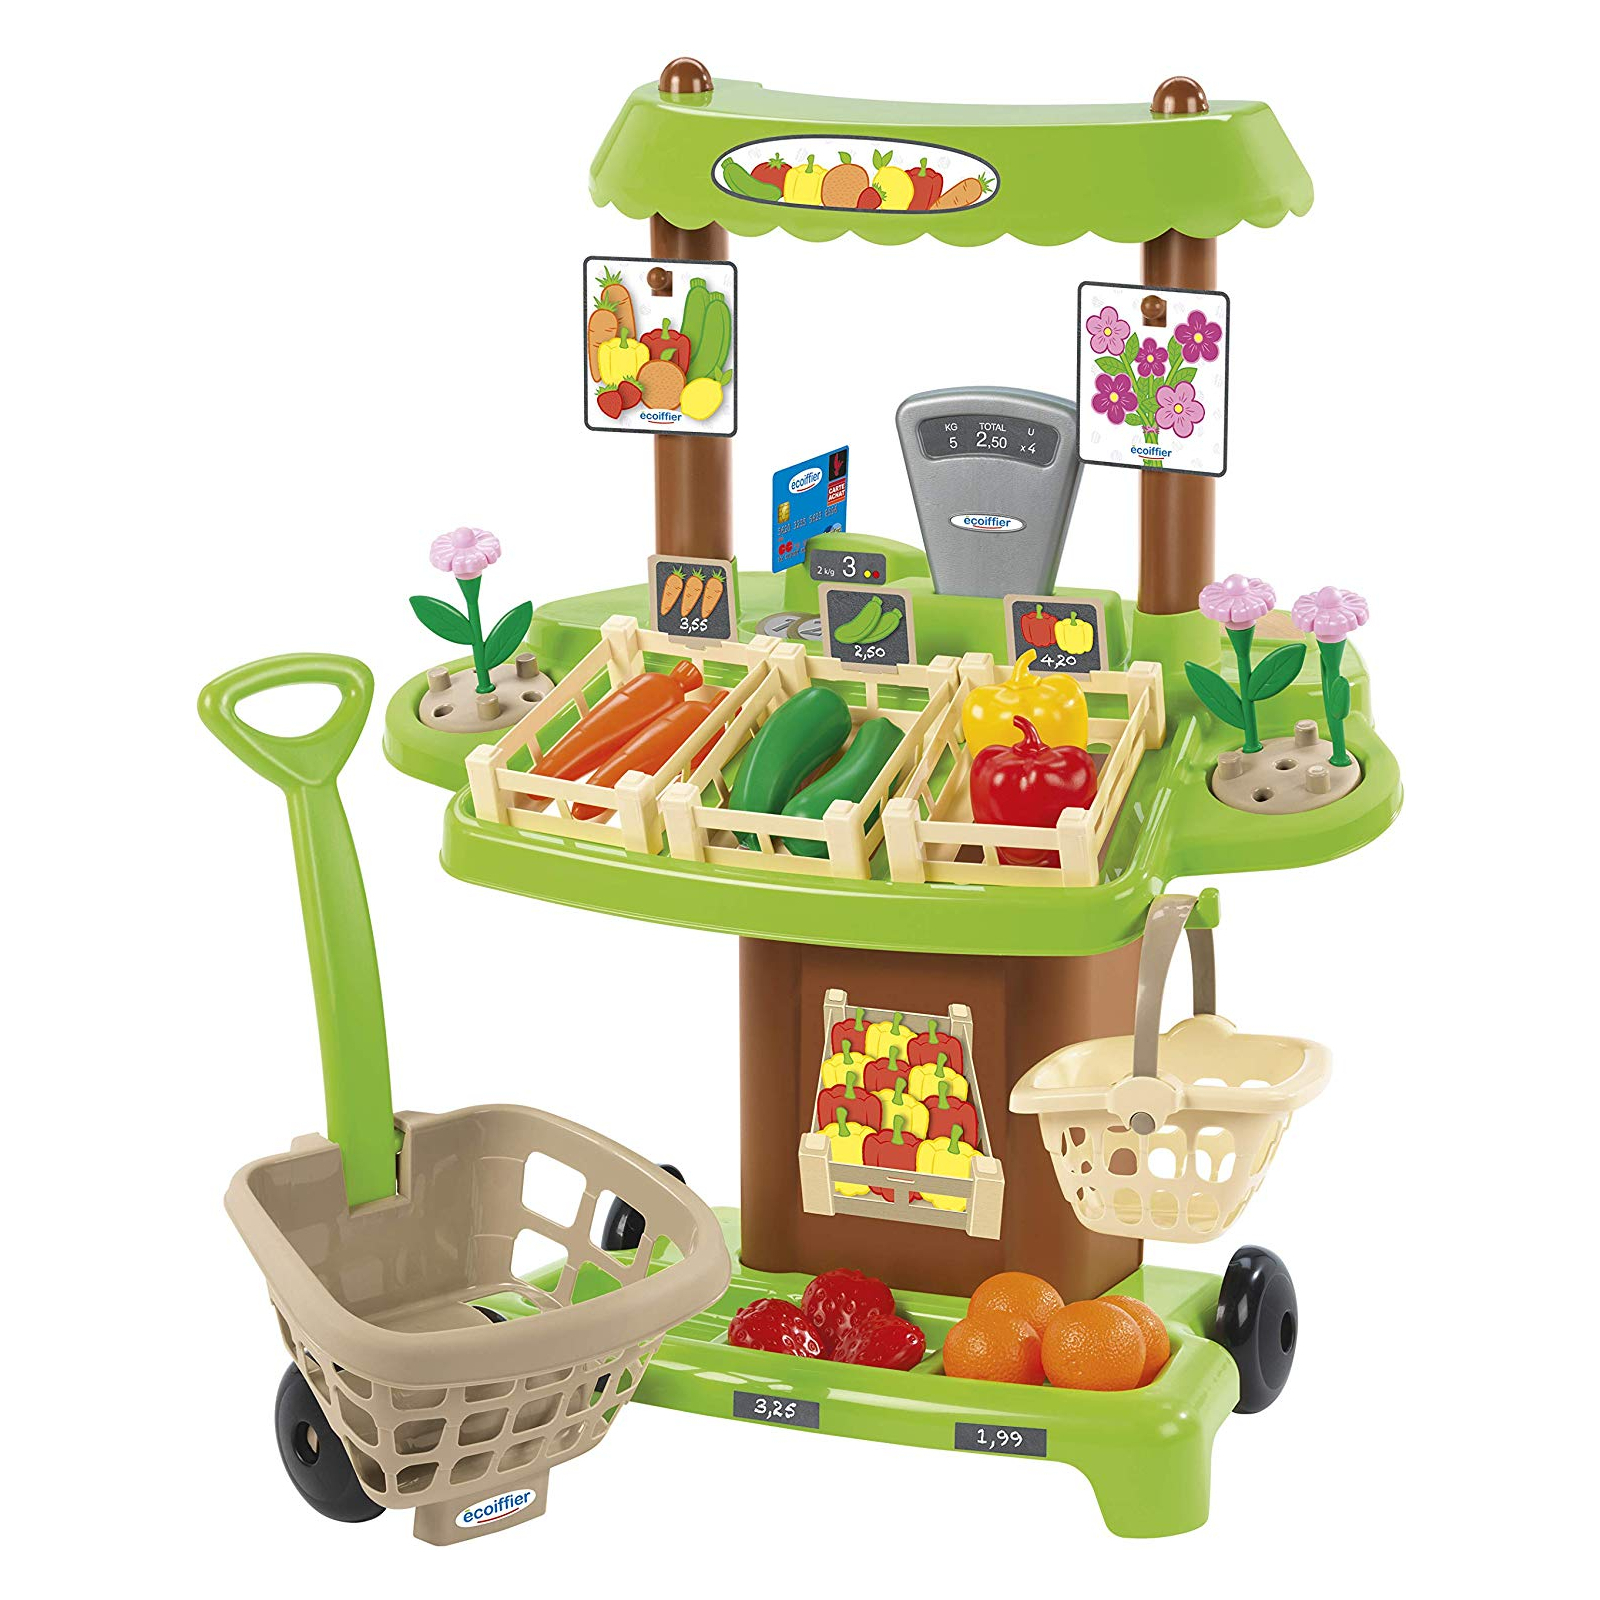 Игровой набор Ecoiffier продуктовый супермаркет Органические продукты (001741)